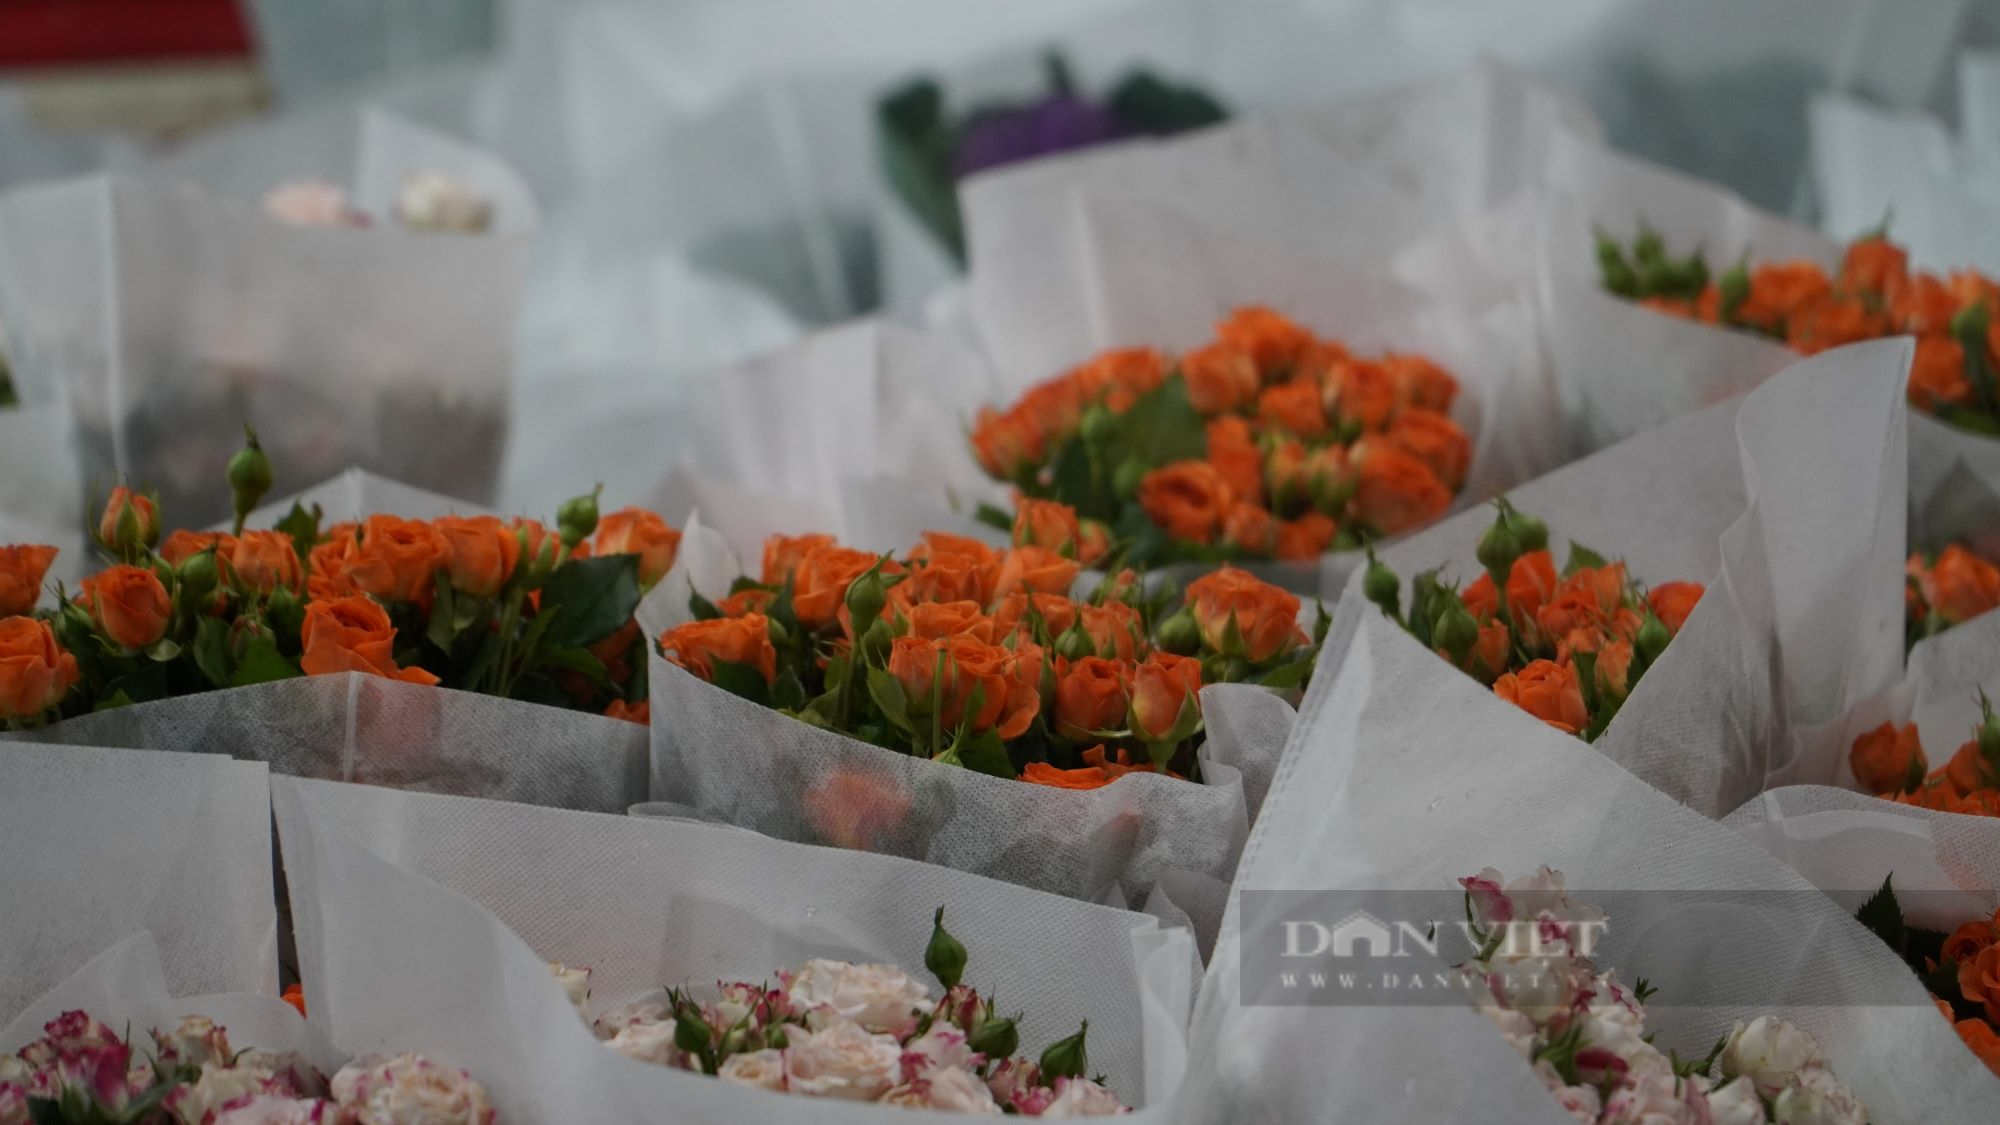 Chợ hoa lớn nhất Sài Gòn đìu hiu dịp lễ 20/10 - Ảnh 7.